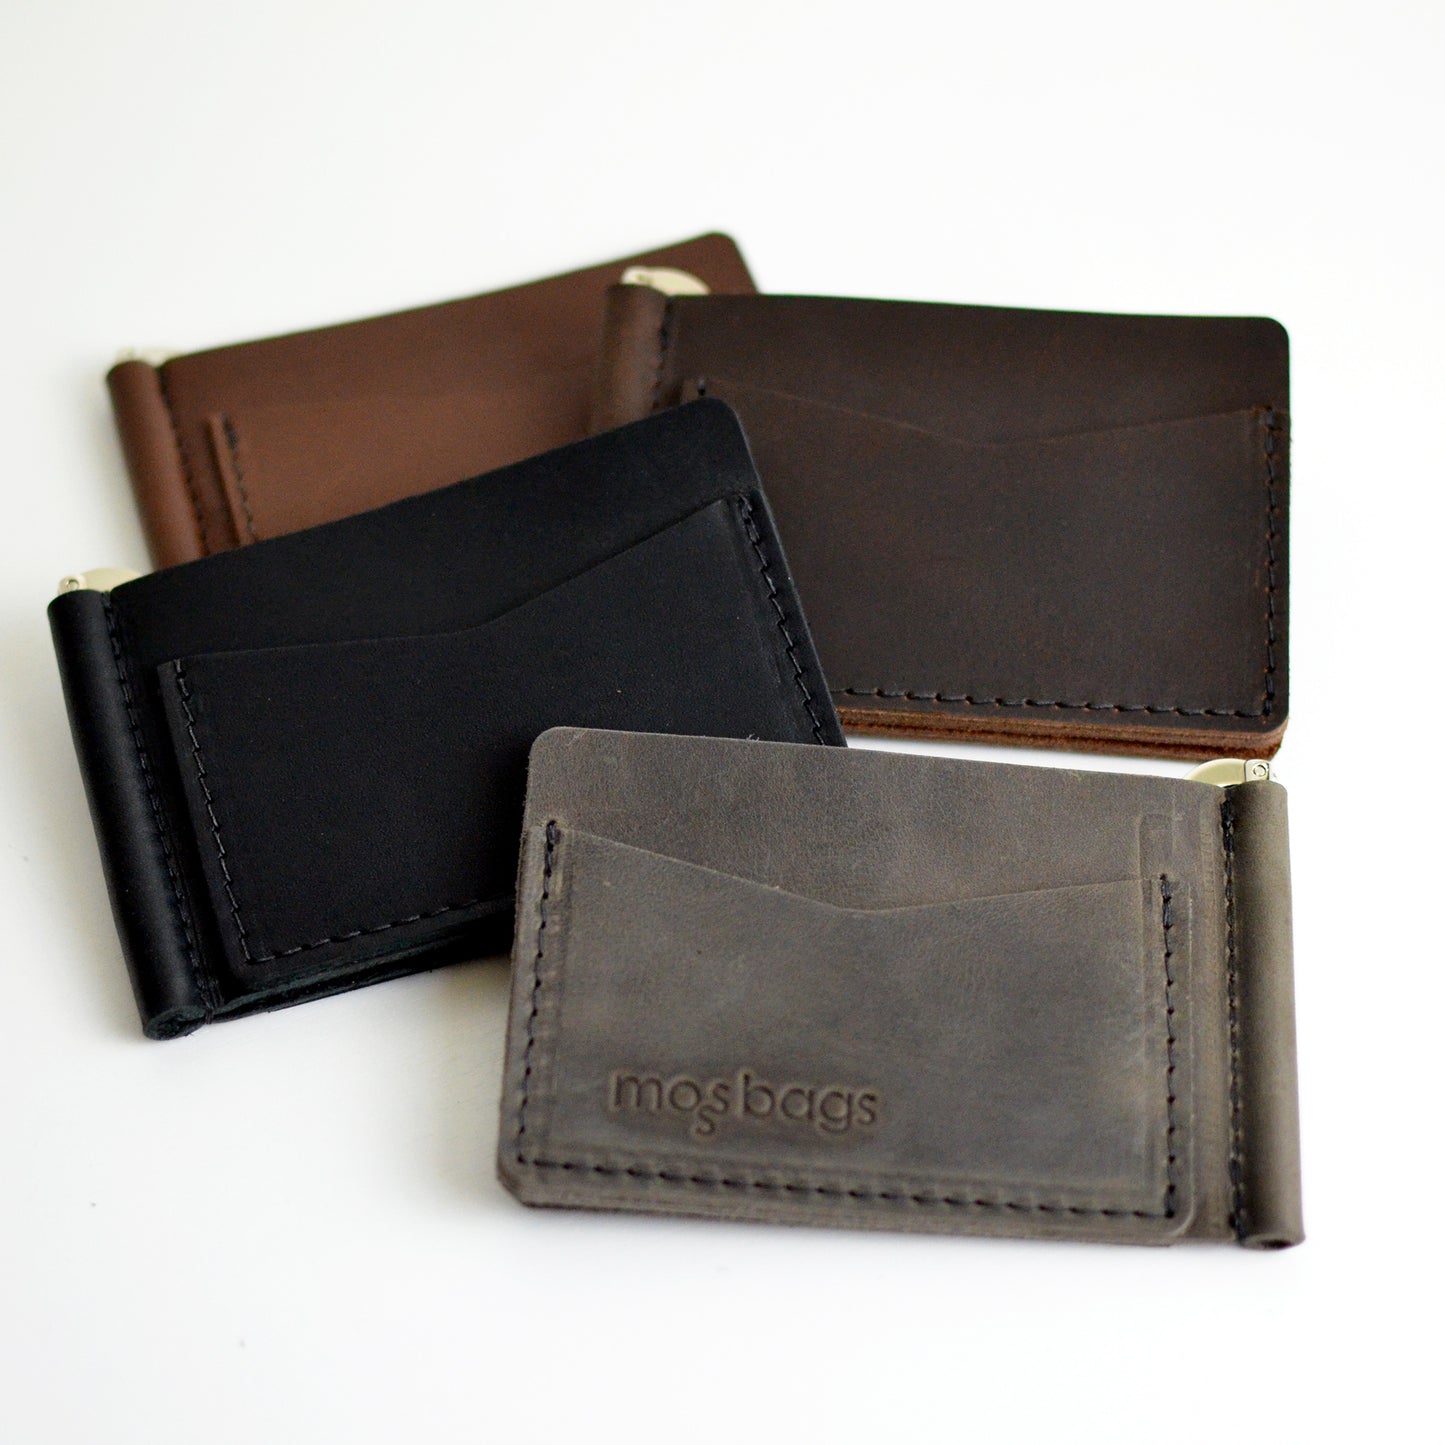 Money Clip Wallet - Dark Chocolate Brown Leather